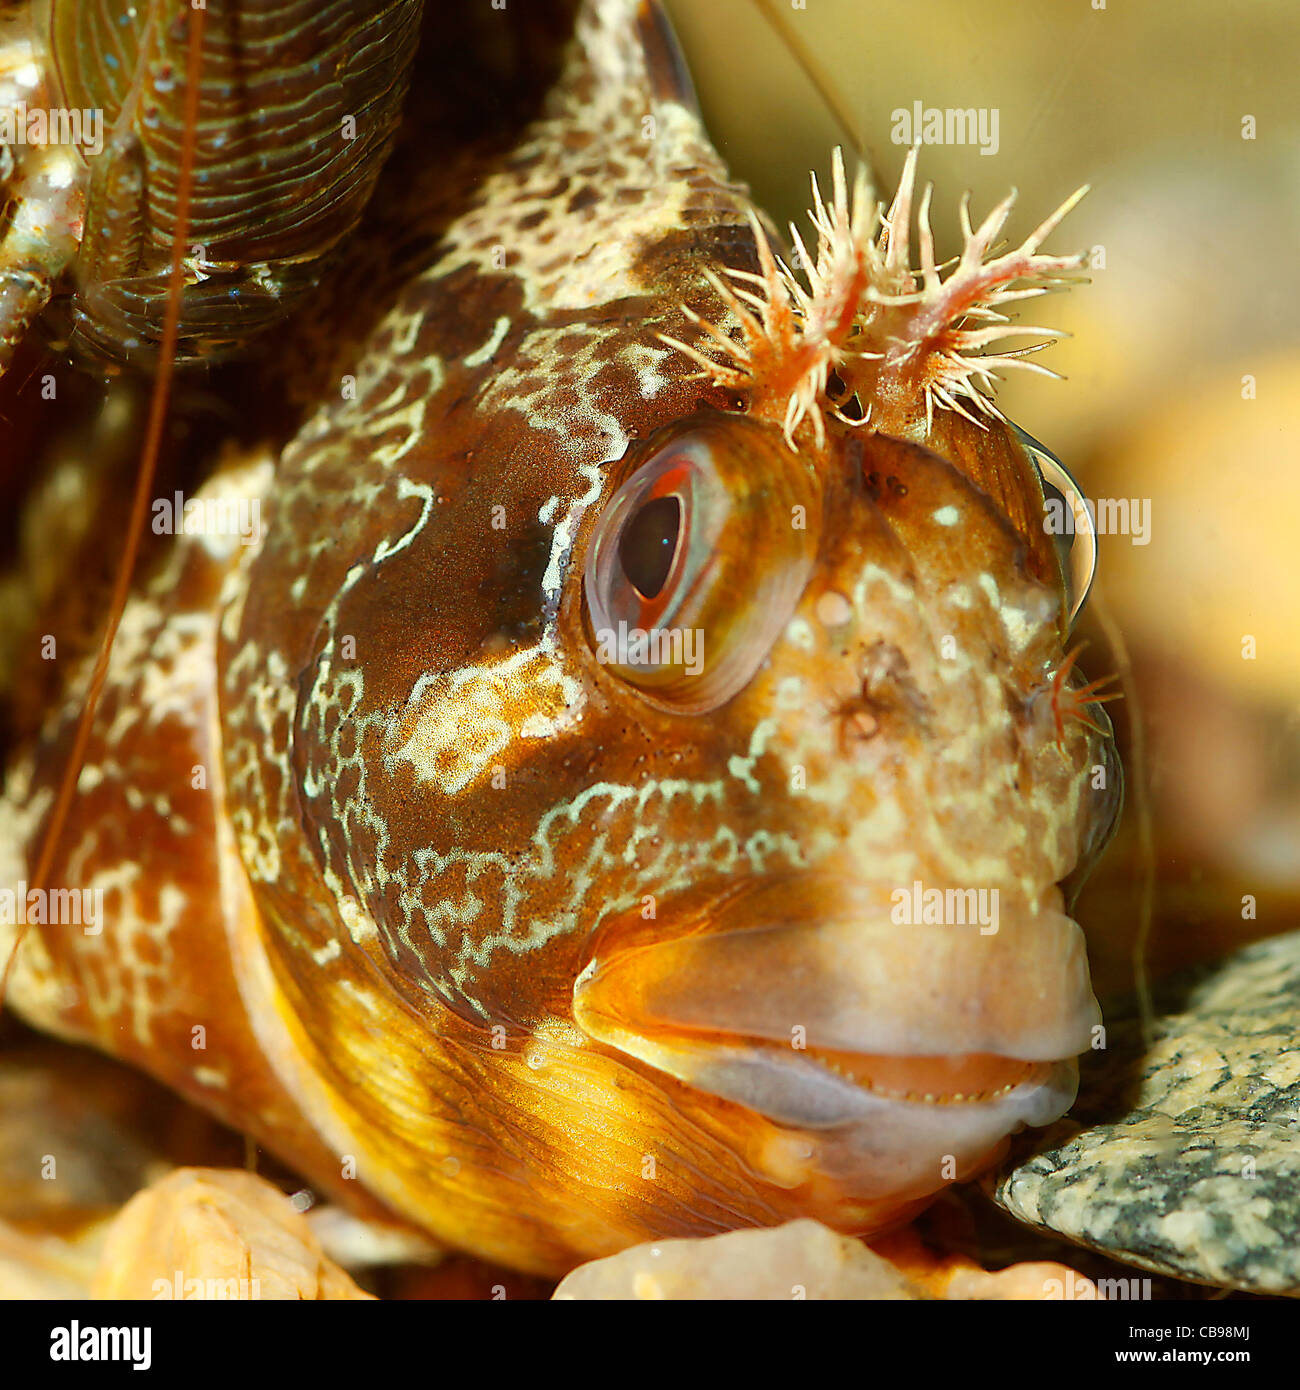 Blennius gattorugine living in an aquarium Stock Photo